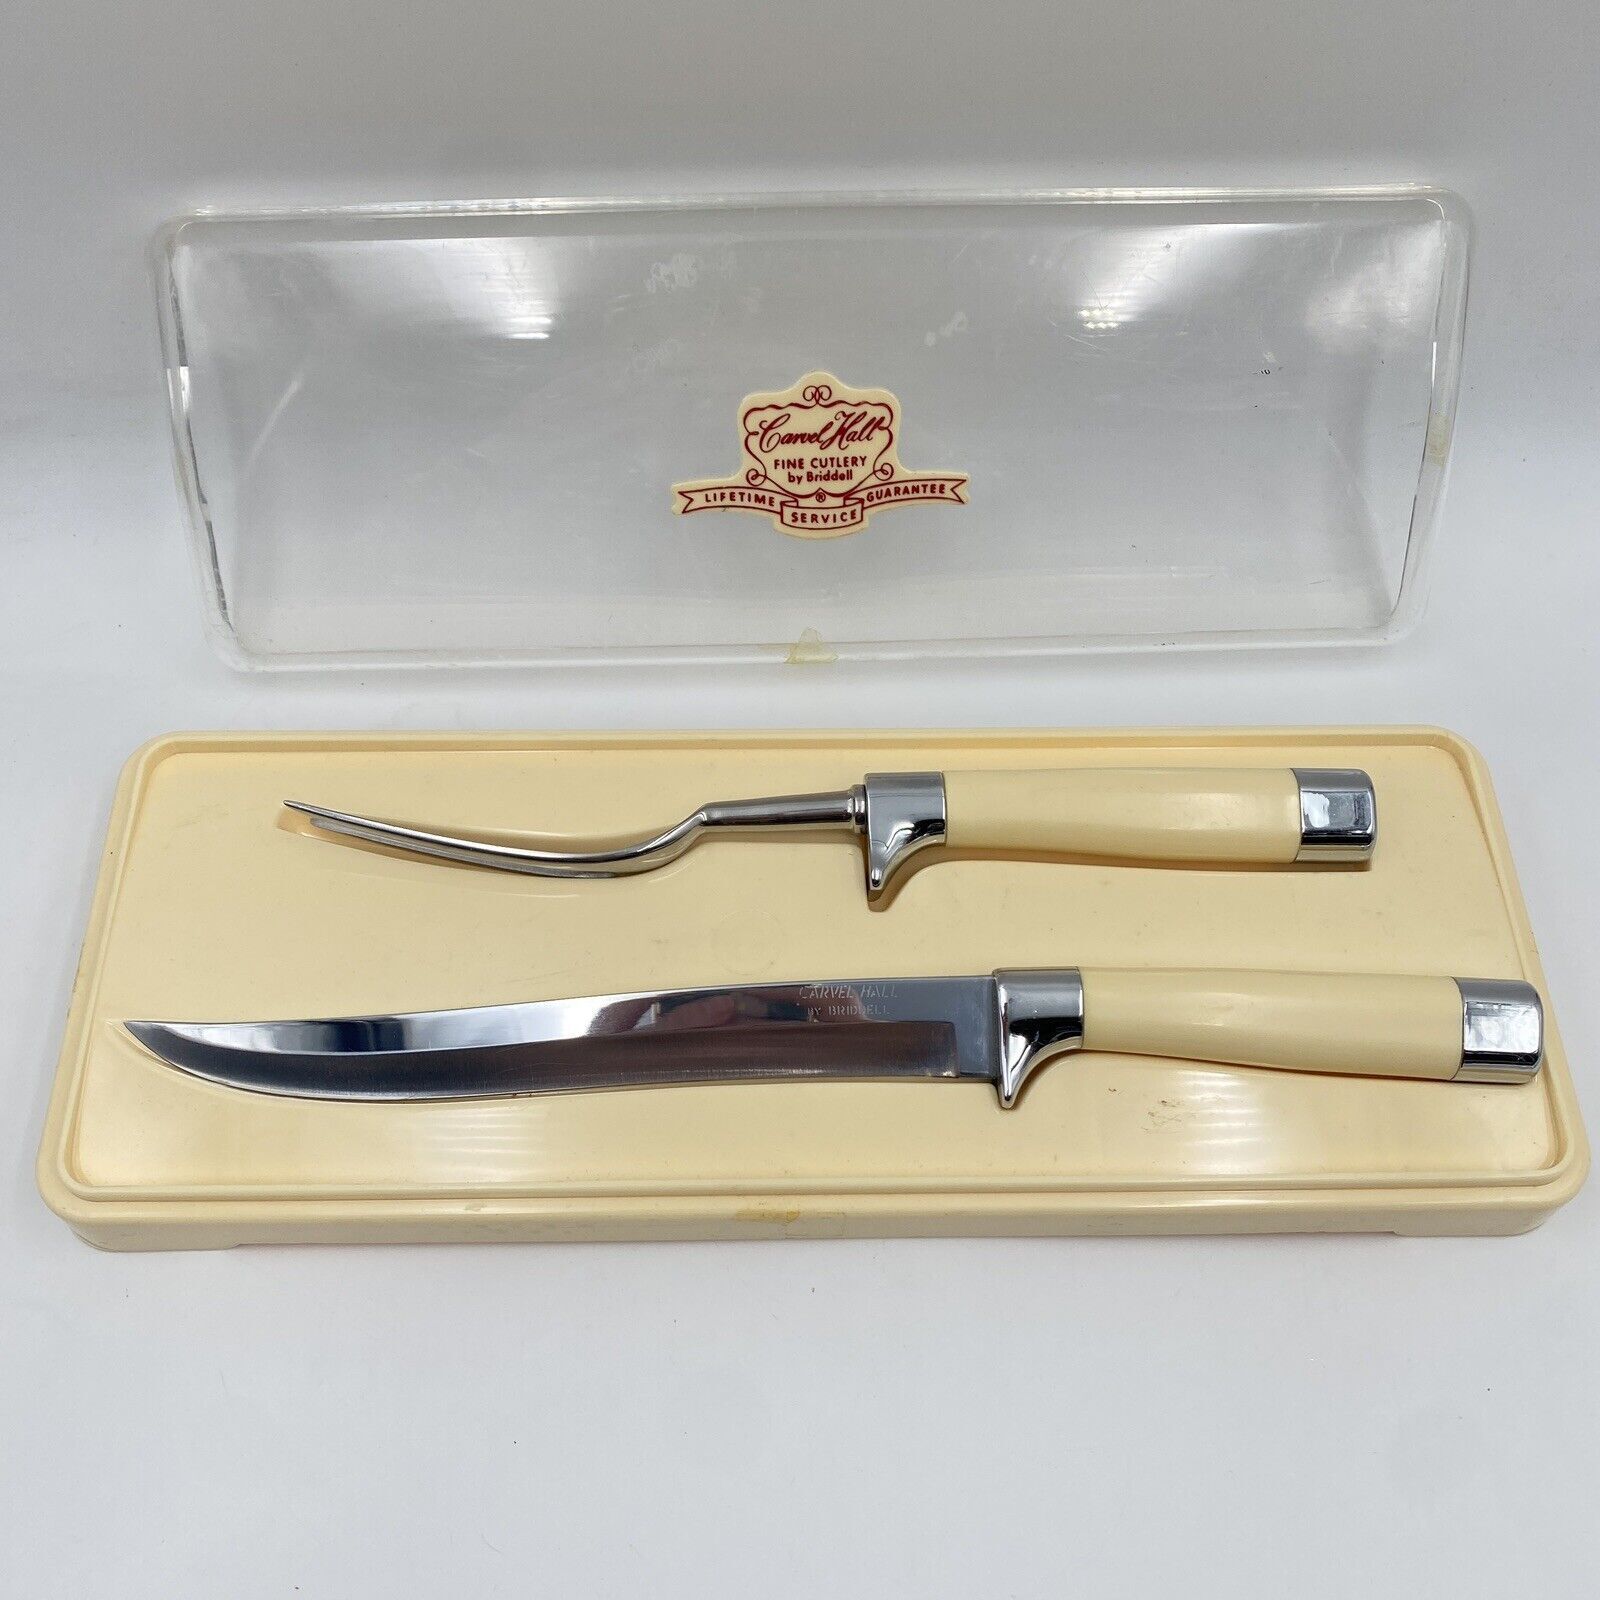 Vintage Carver Hall Chas D Briddell Inc Steelsmiths Fork & Knife Carving Set